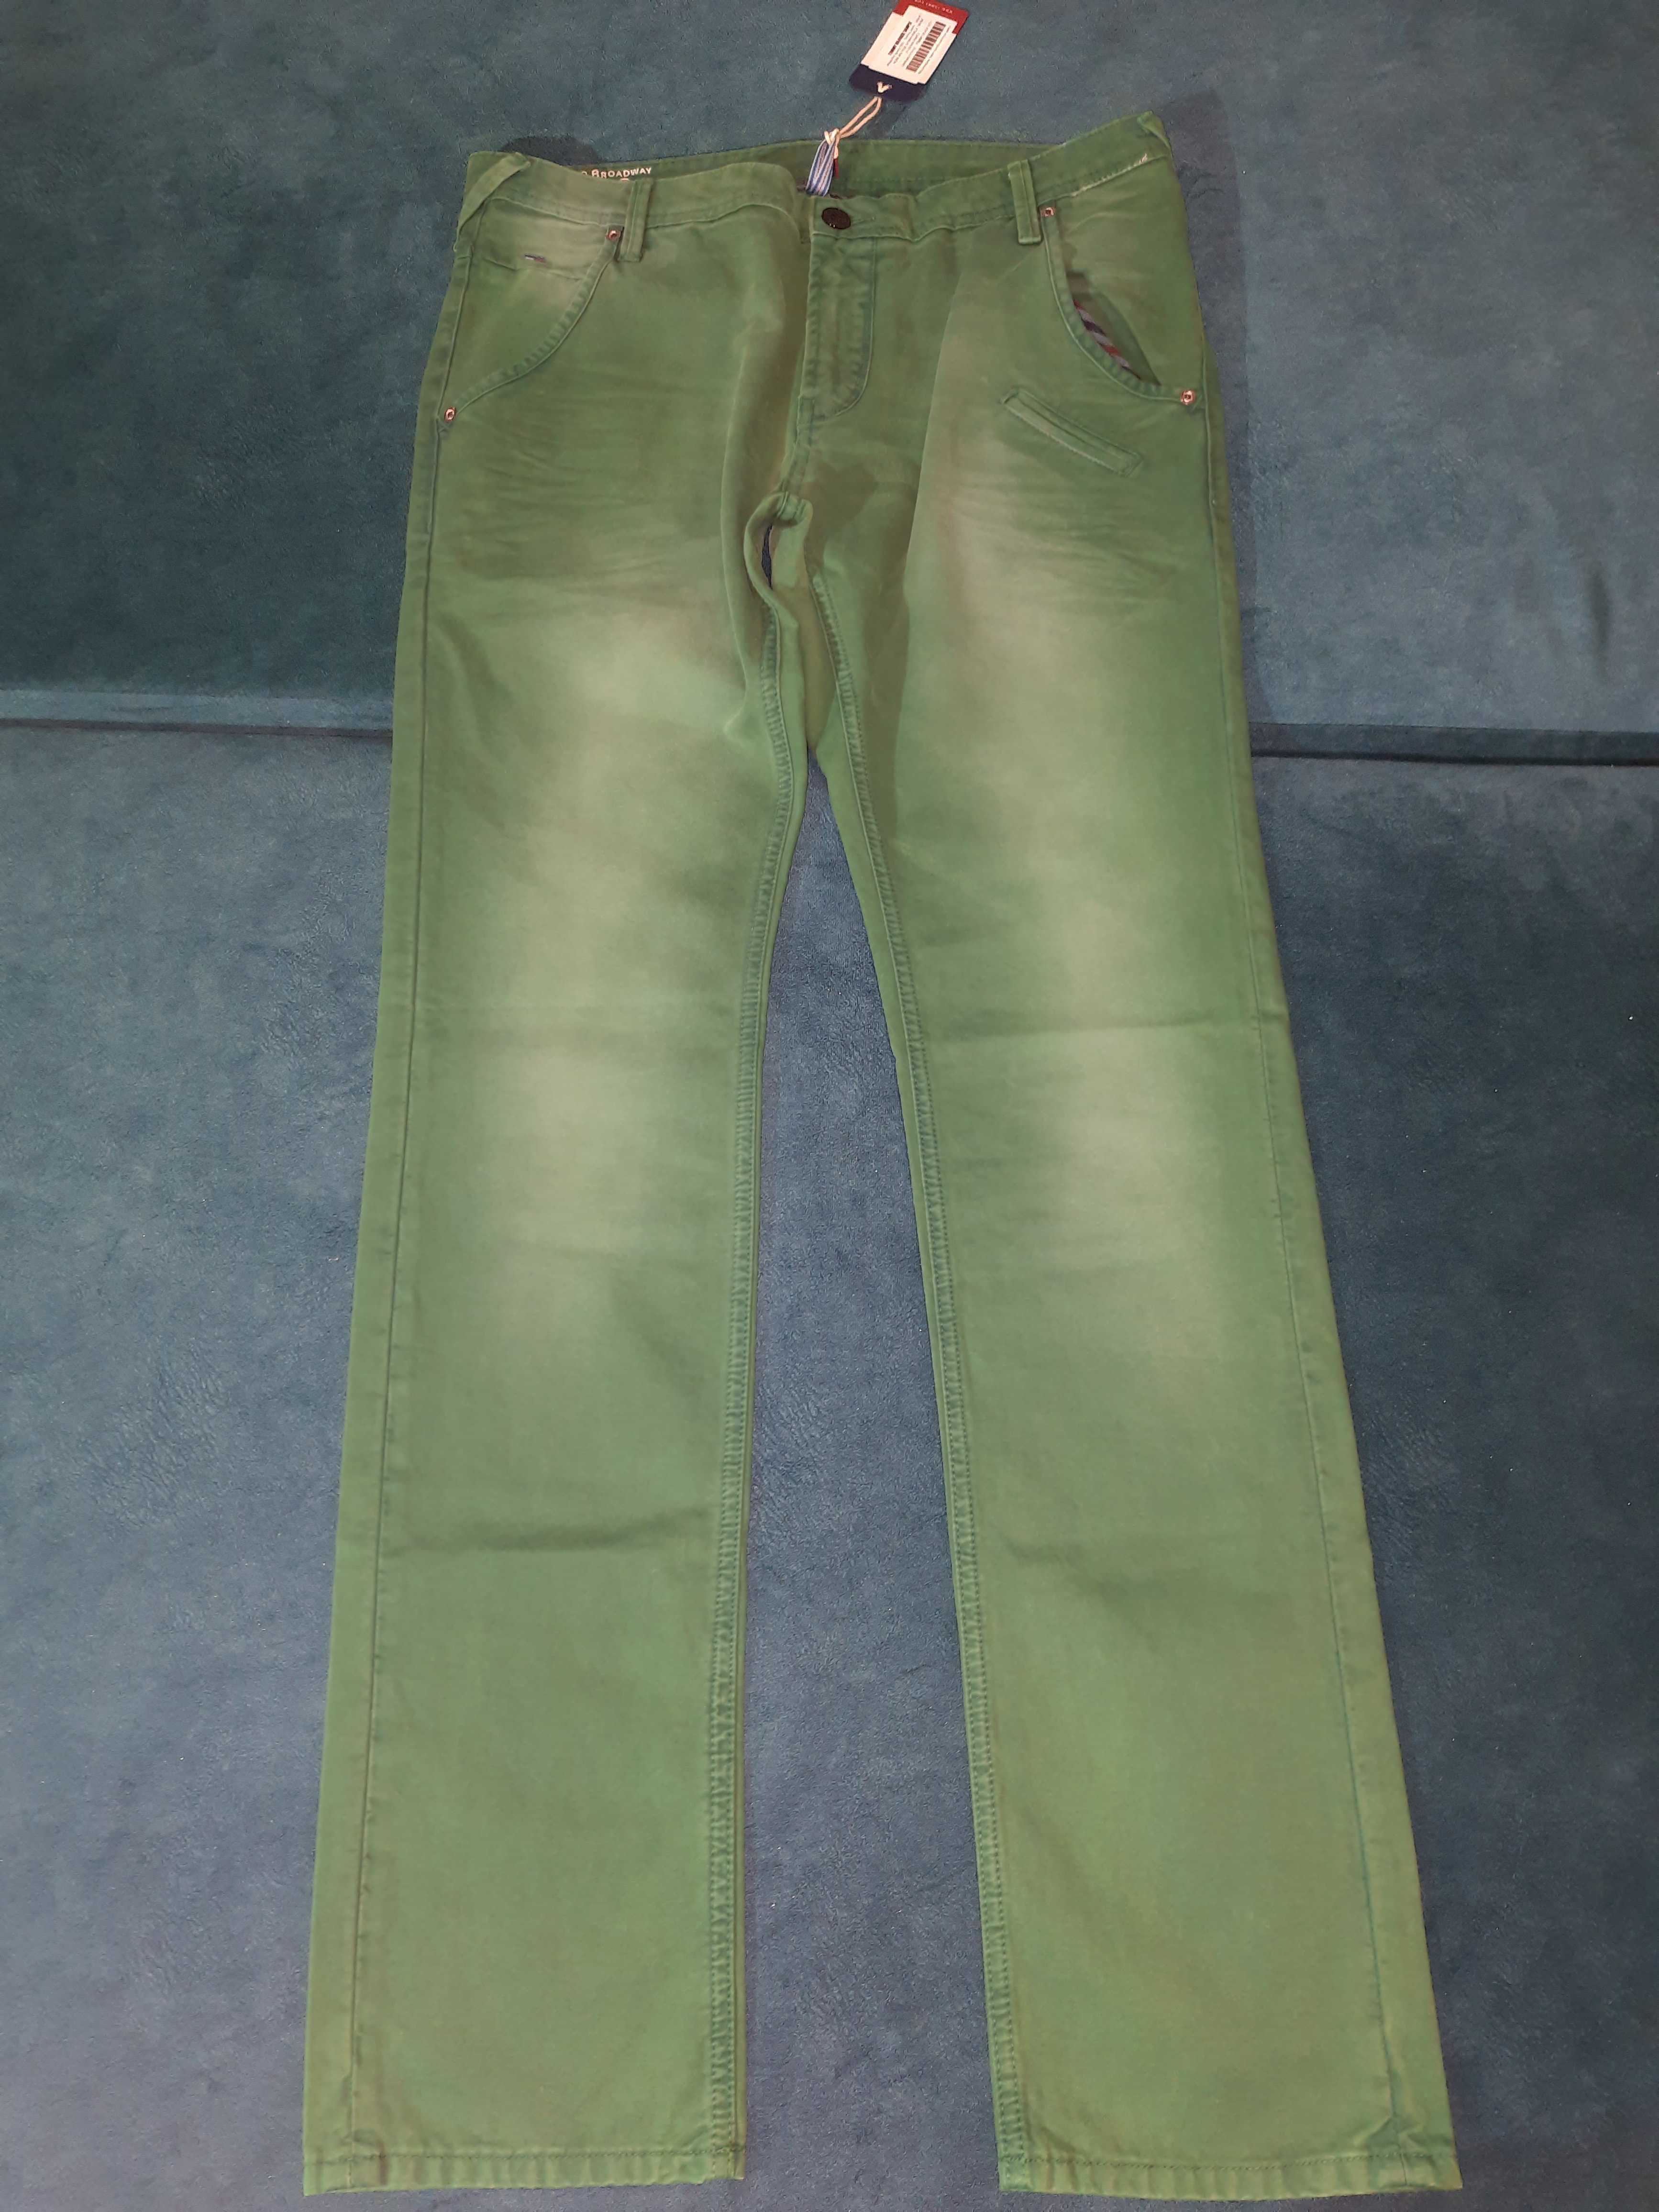 Стильные летние зеленые джинсы Tommy Hilfiger. W32L34.Новые